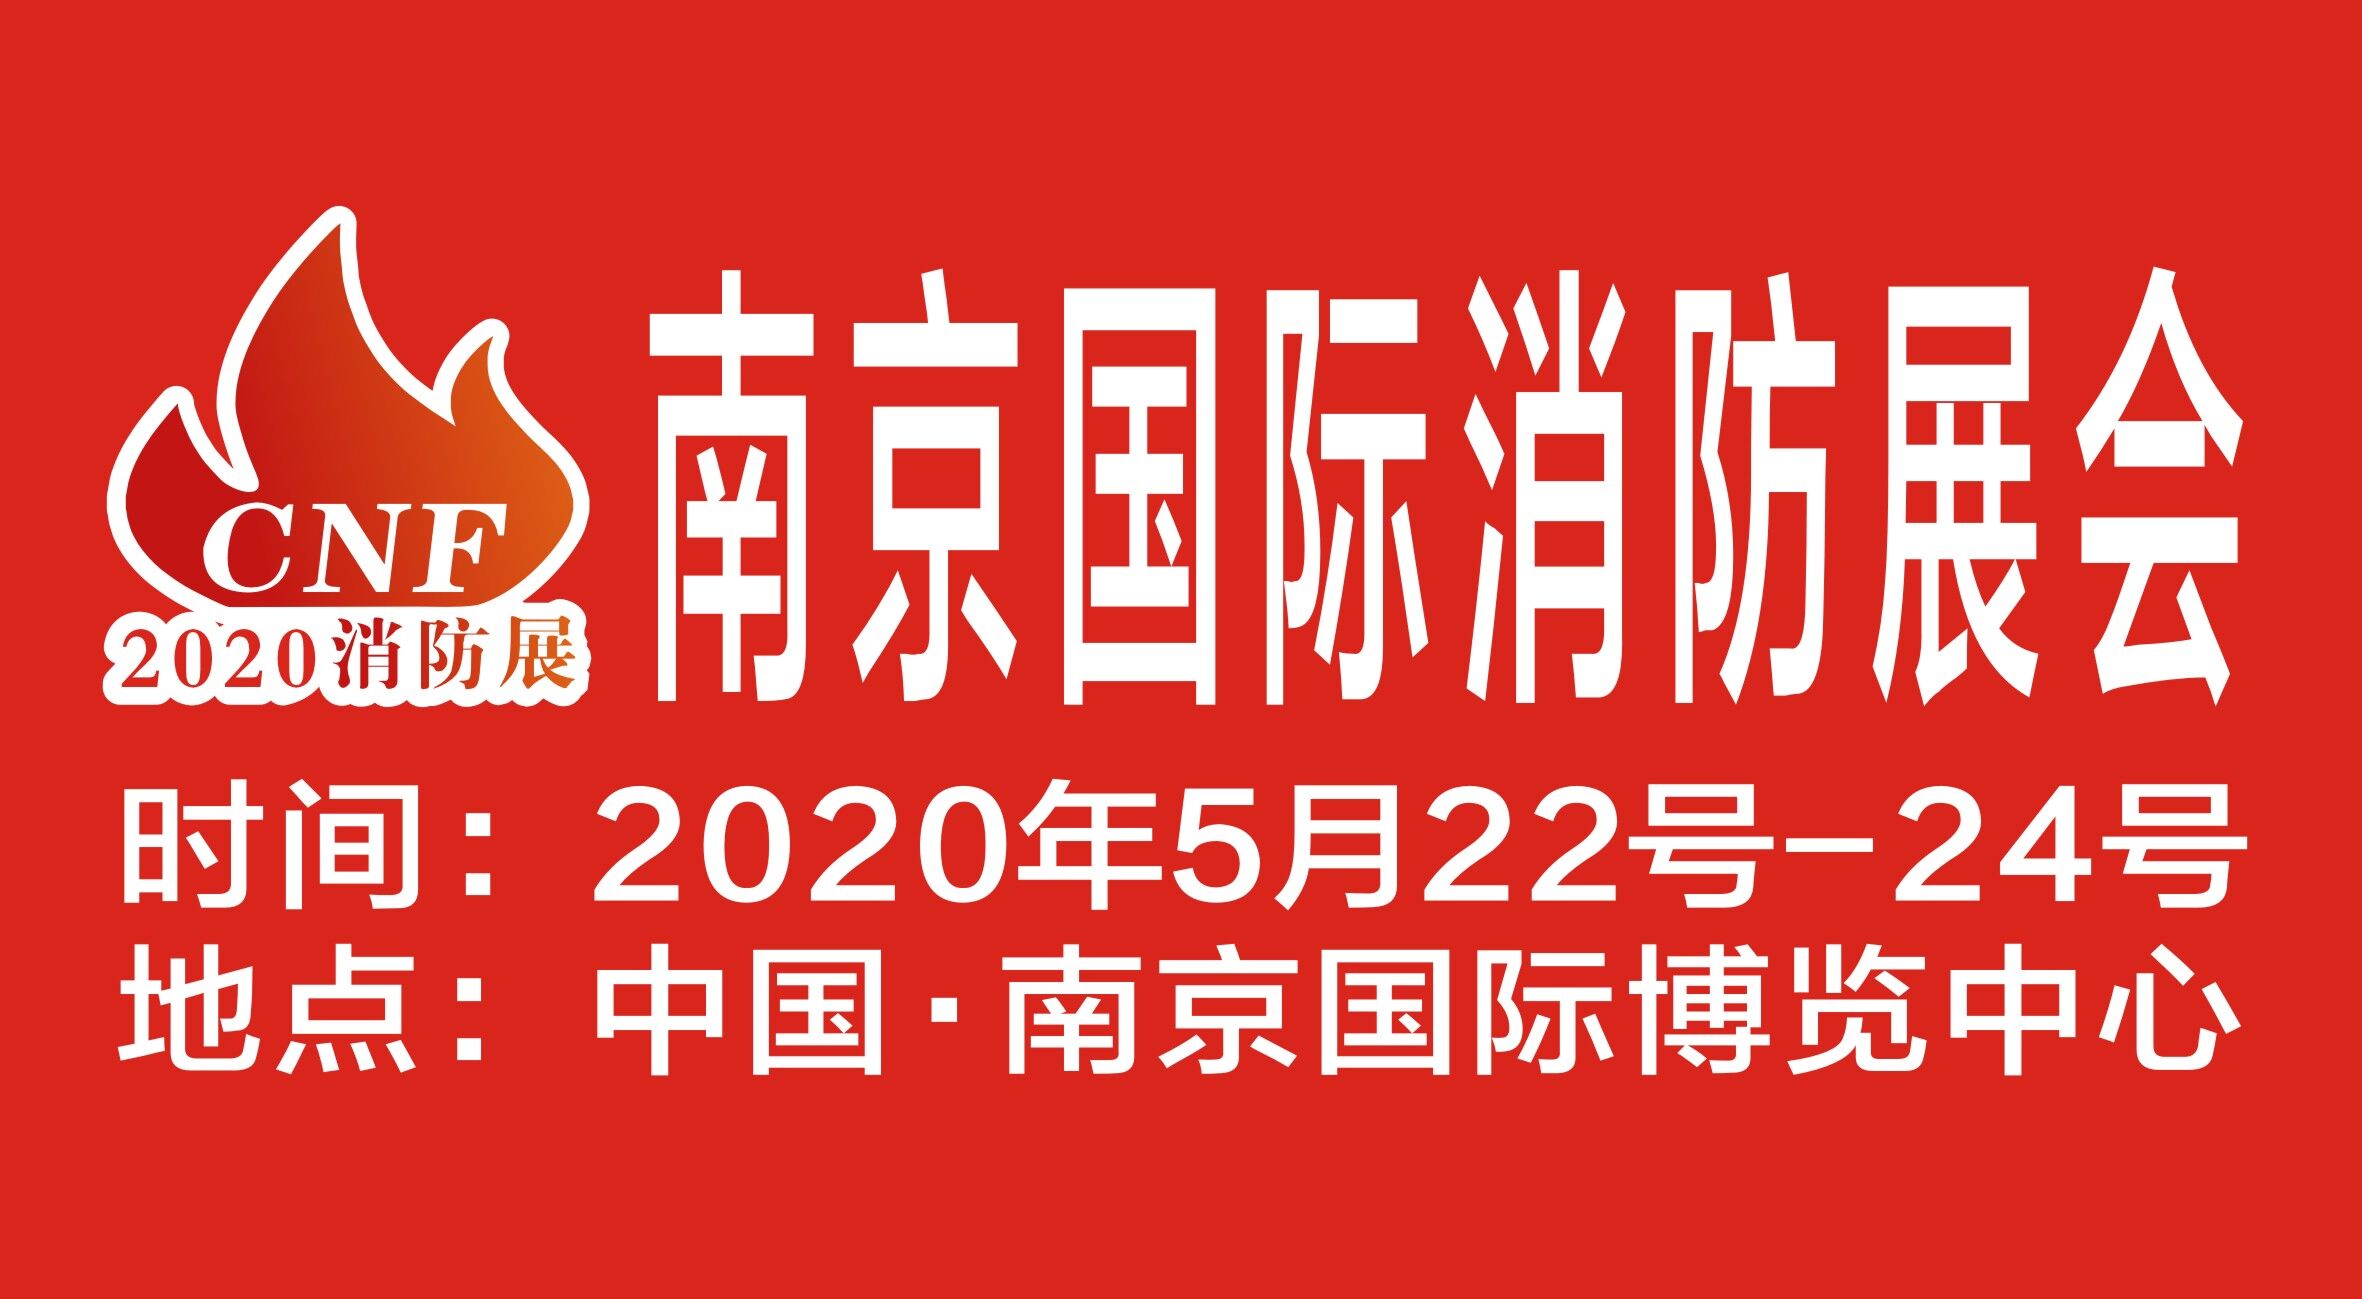 CNF南京国际消防展览会 |5月22-24日 越邦工贸邀您参观丨| 展位号：H057